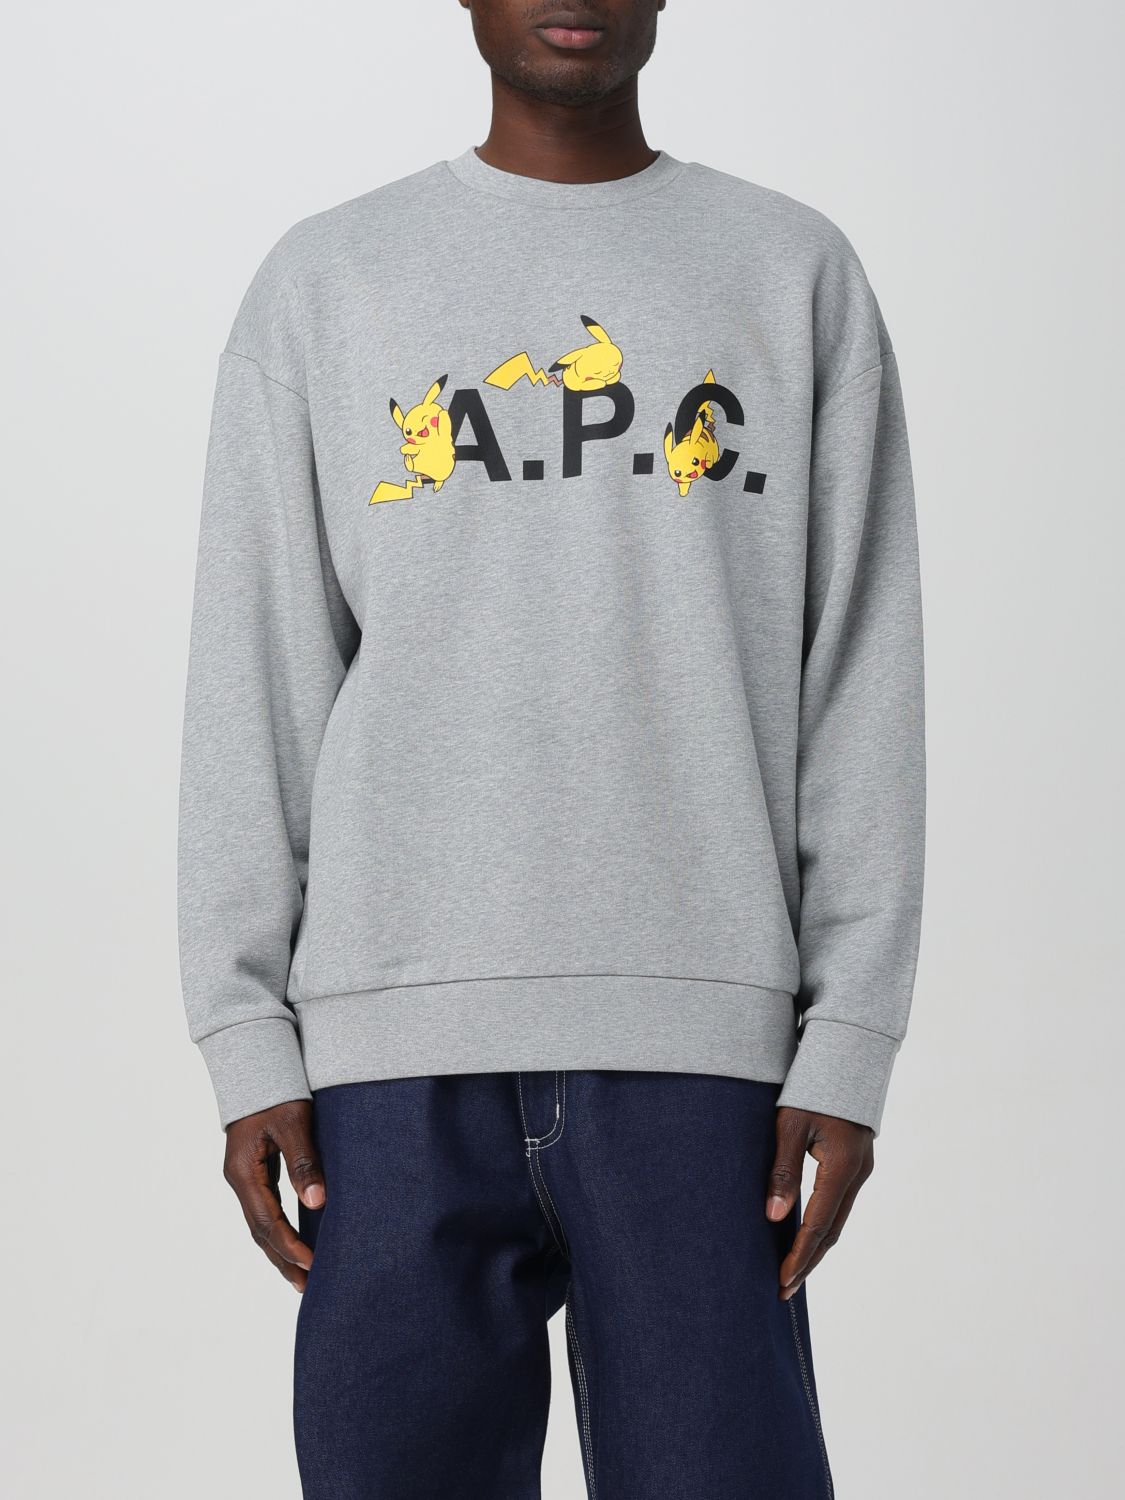 Apc Sweatshirt A.p.c. Men Color Grey